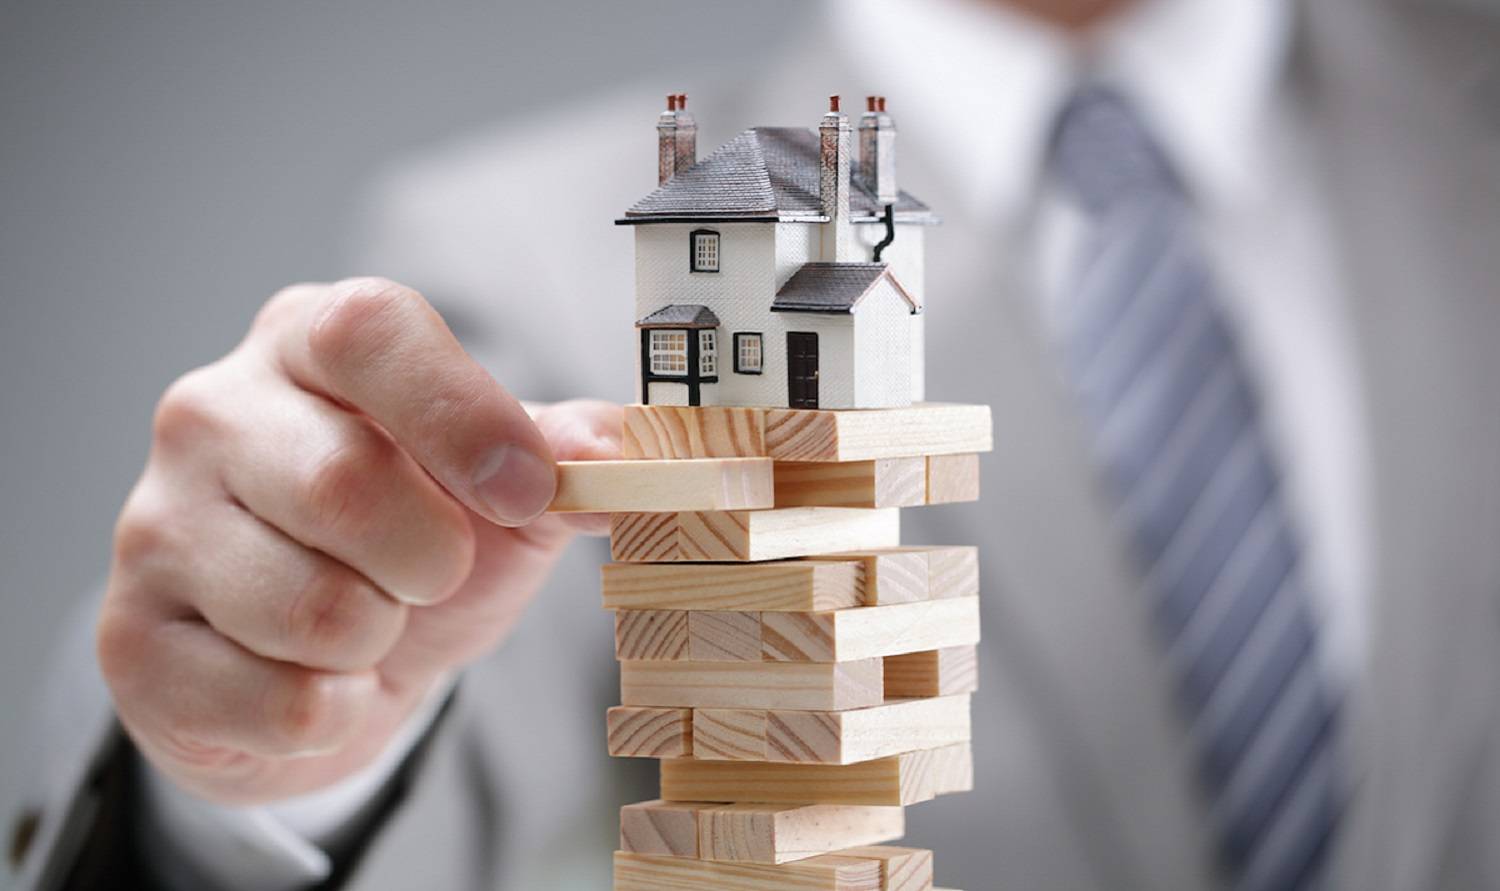 Инвестиции в недвижимость - плюсы и минусы, правила, альтернативы